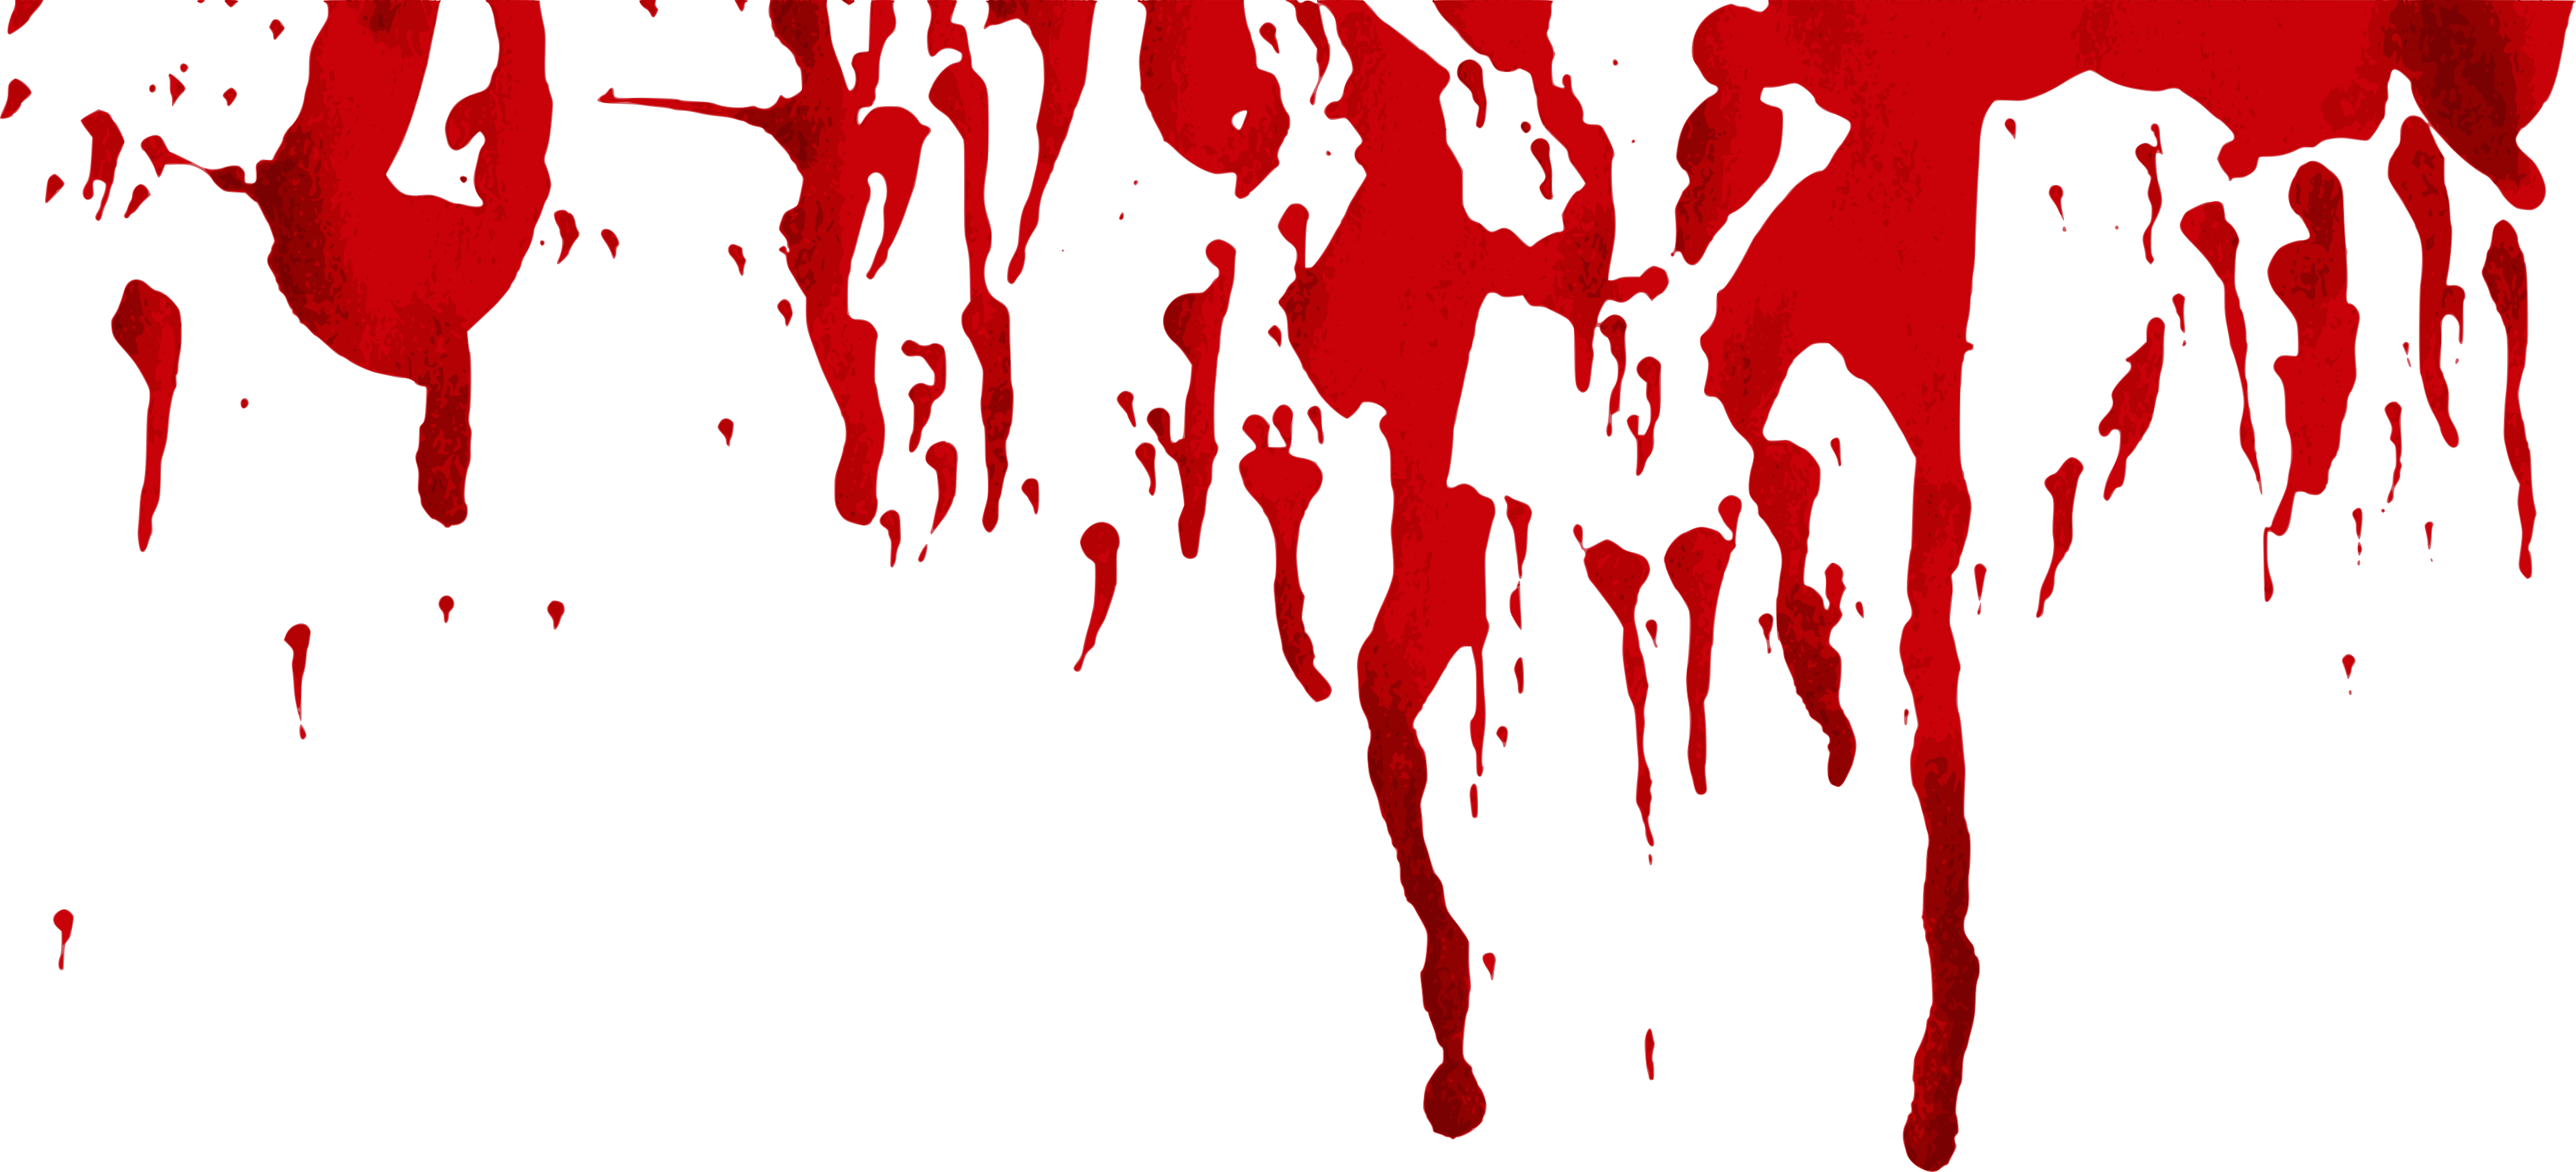 برش الدم الجرونج صورة PNG مجانية